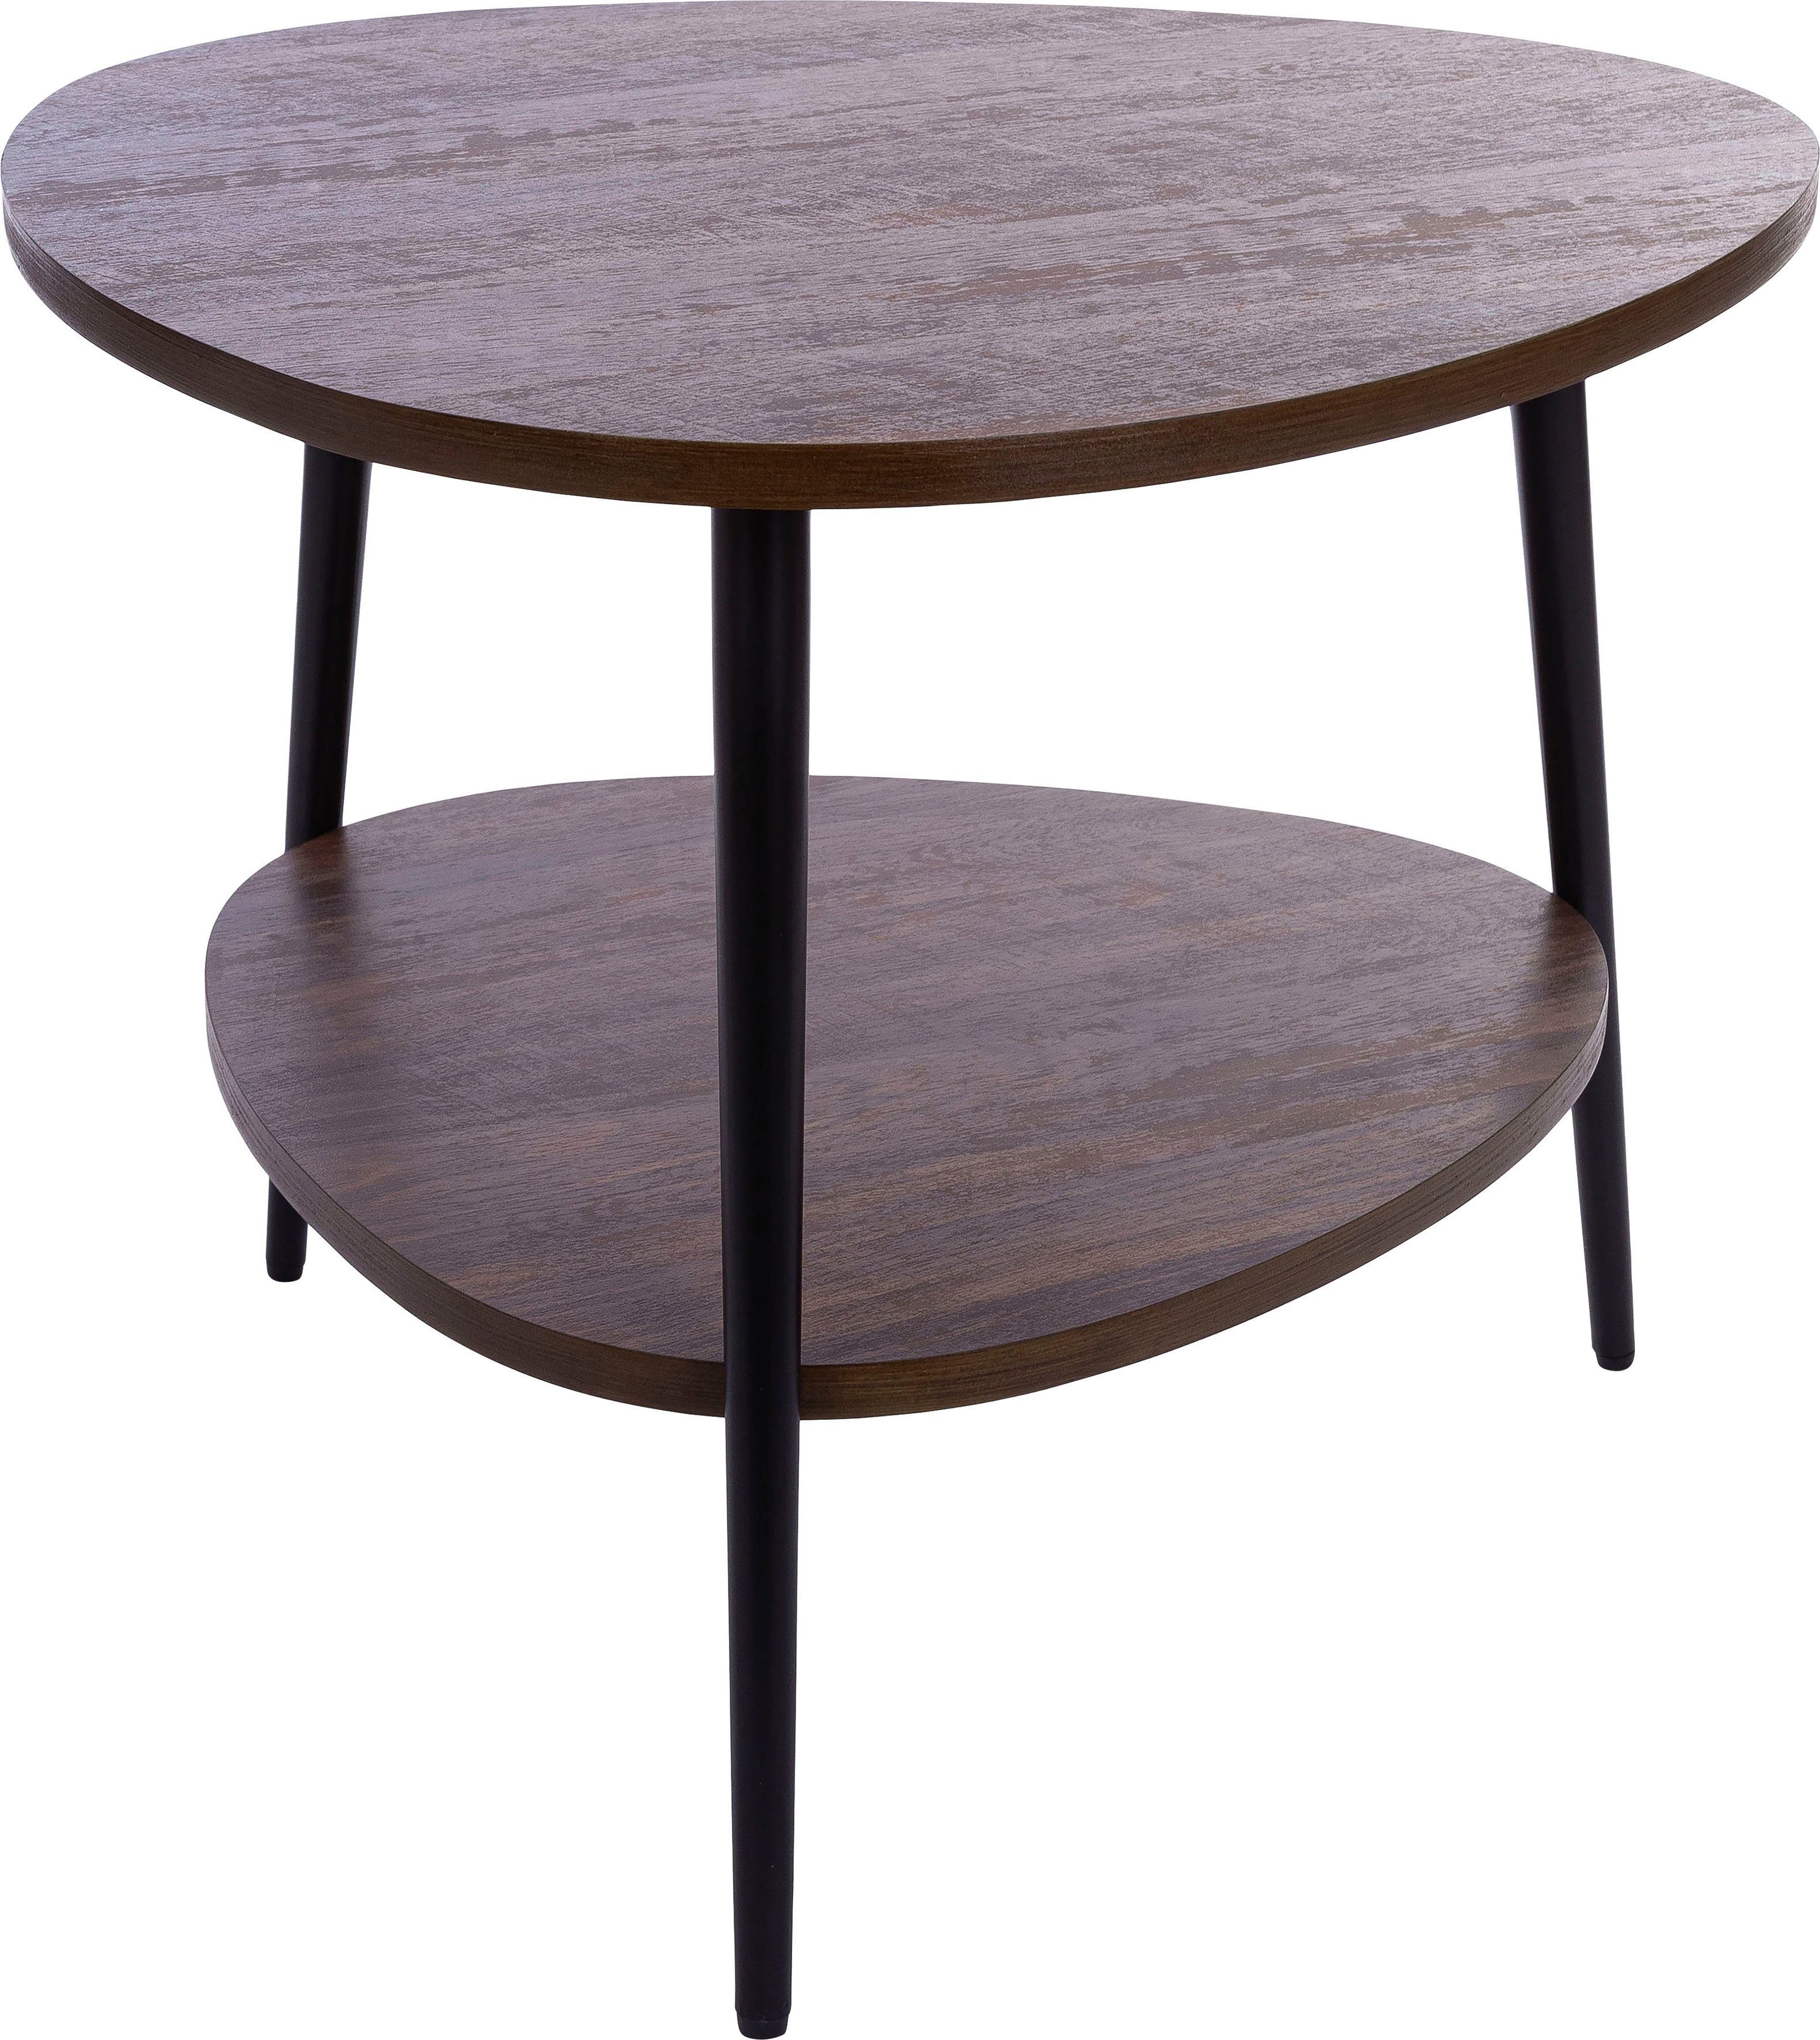 Beistelltisch, affaire Tischplatte inkl Oval, natur Home im edlem Ablagefach, Tischplatte Beistelltisch Holz Design belassender